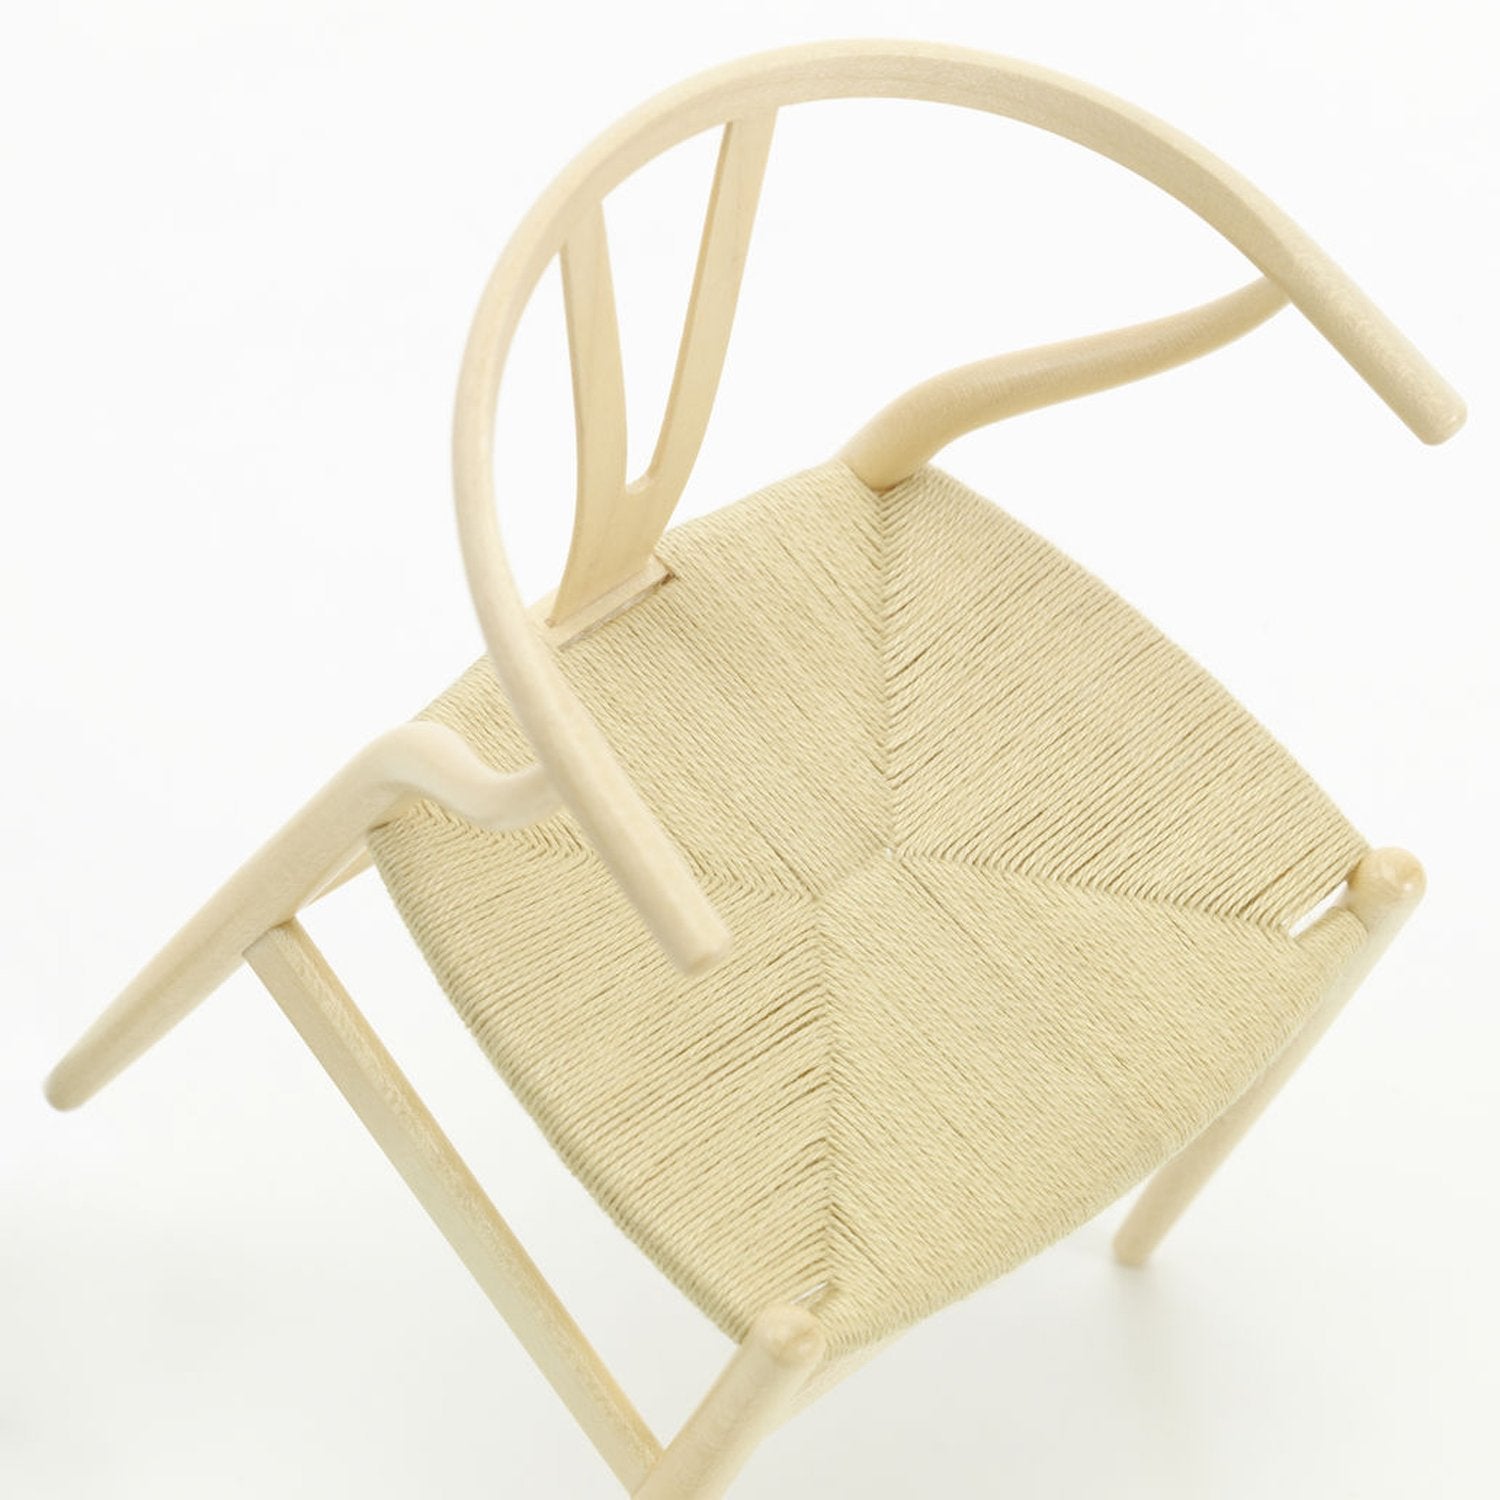 Miniatur Y-Chair - Vitra Design Museum Shop